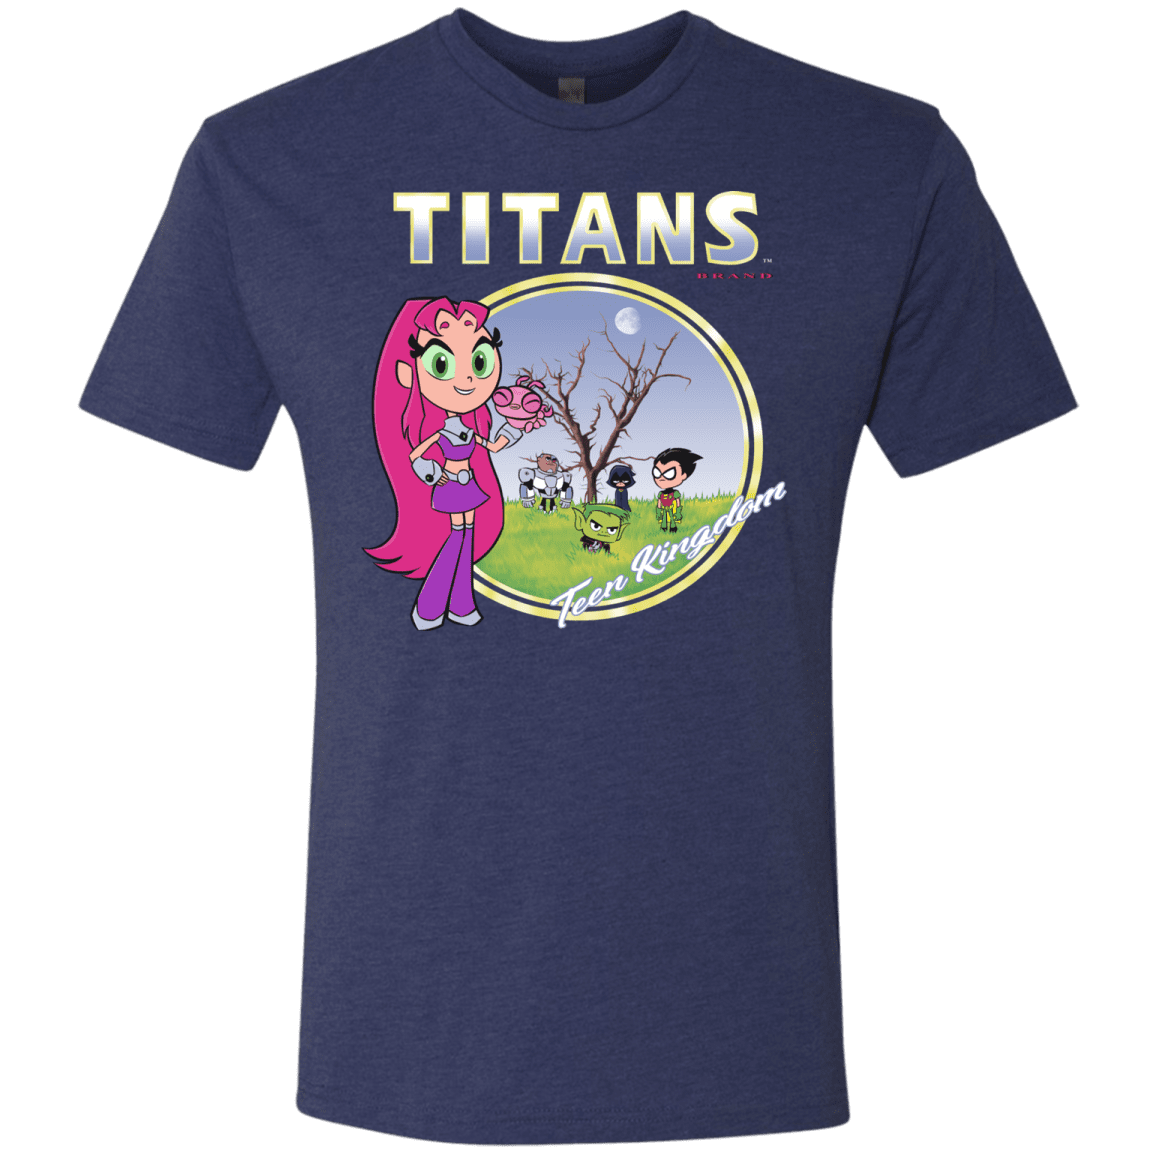 T-Shirts Vintage Navy / S Titans Men's Triblend T-Shirt